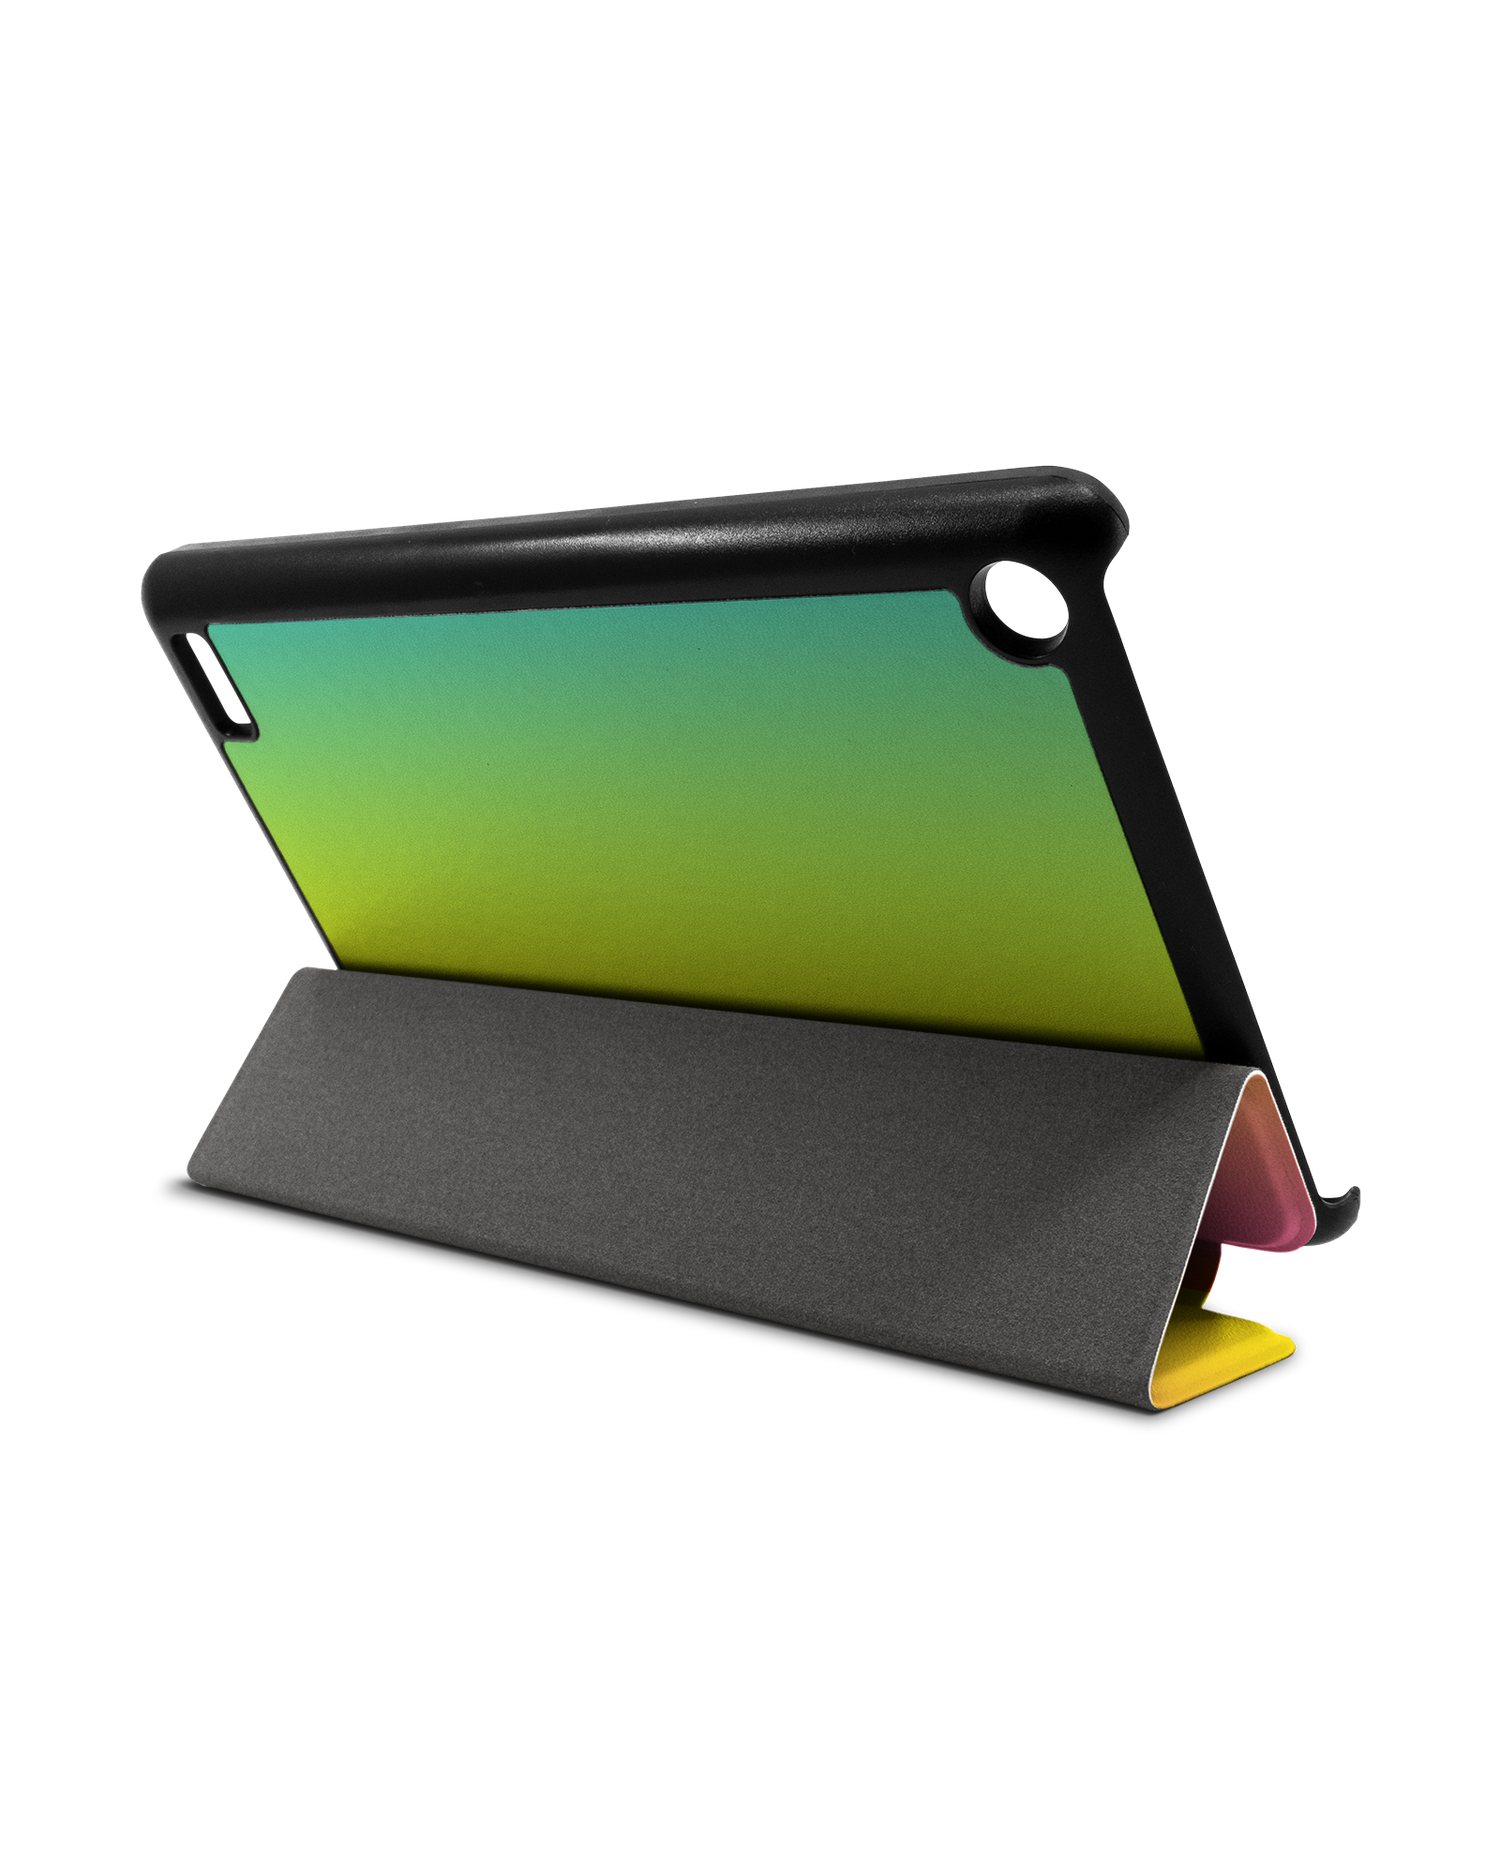 Have A Day Tablet Smart Case für Amazon Fire 7: Aufgestellt im Querformat